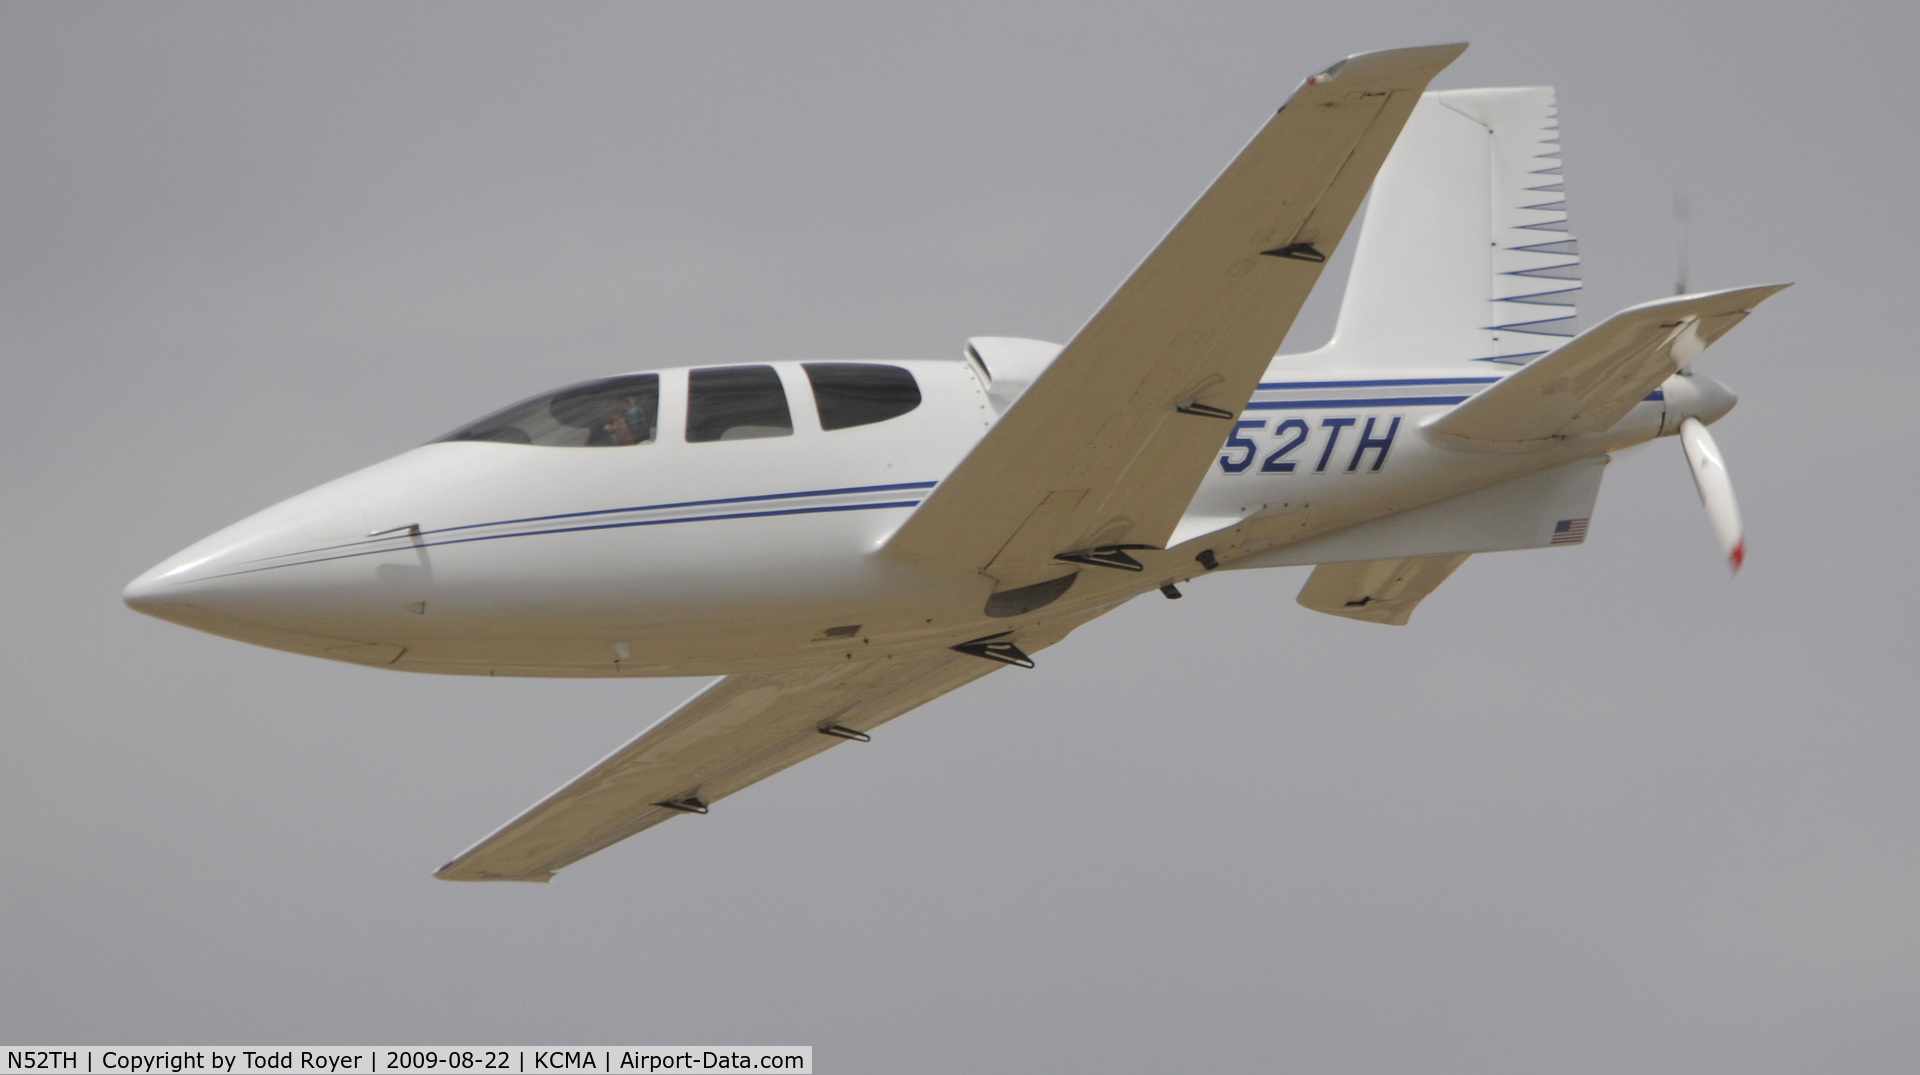 N52TH, 1999 Cirrus VK-30 C/N 143, CAMARILLO AIR SHOW 2009